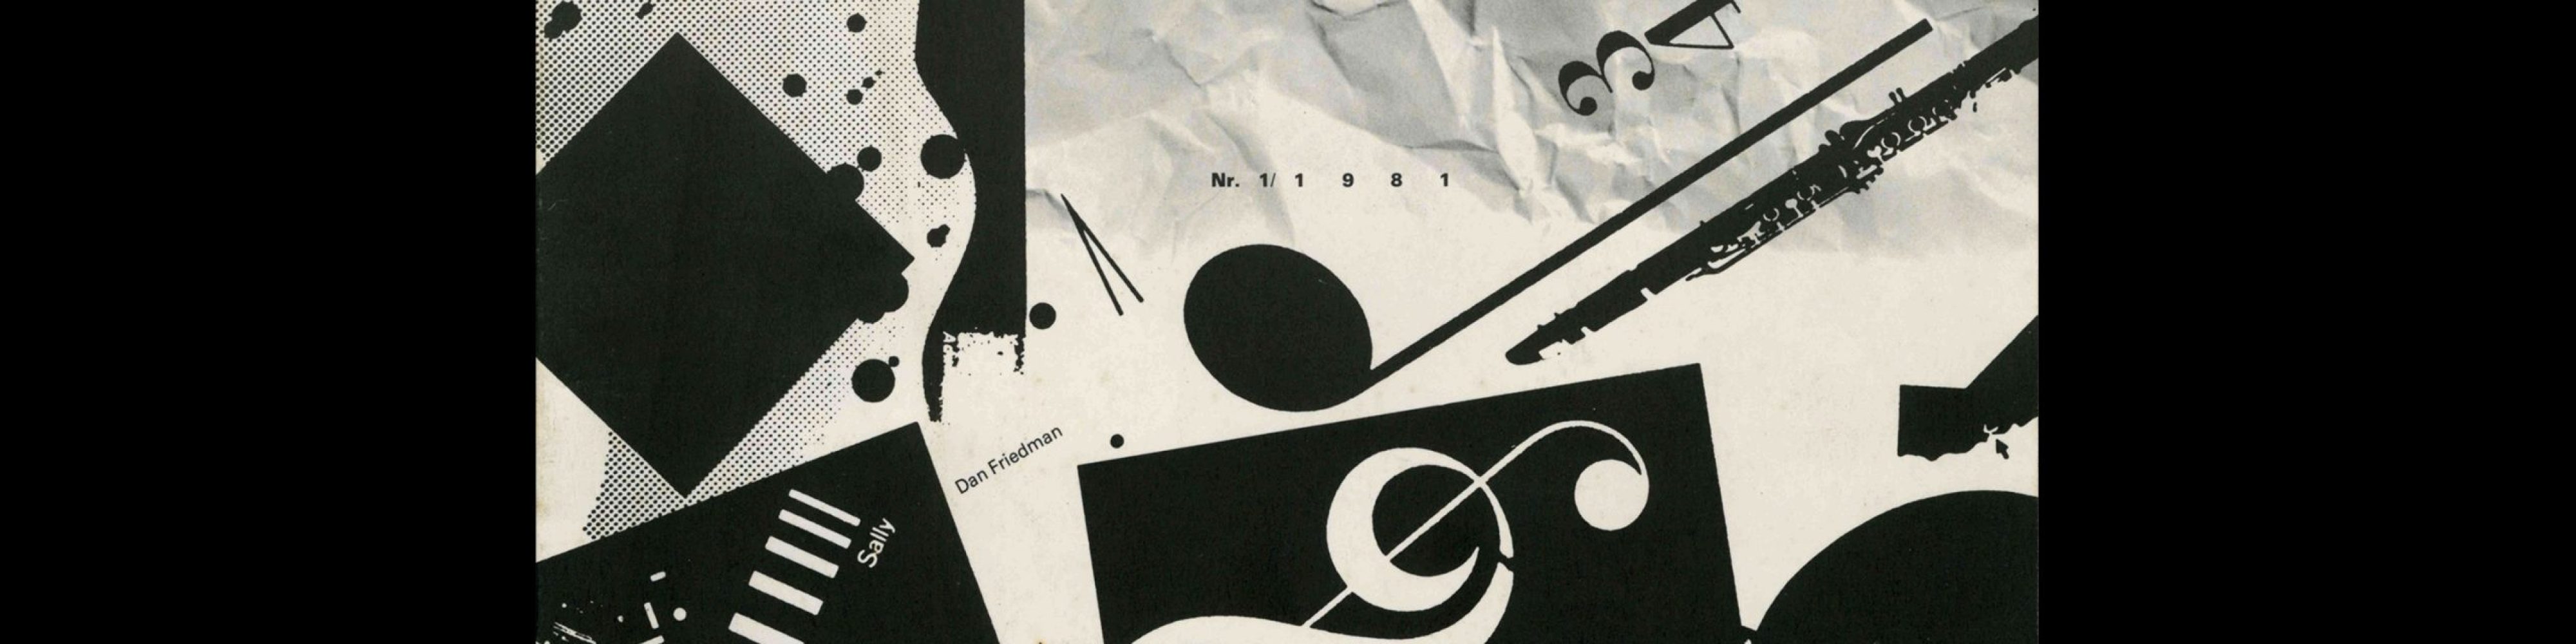 Typografische Monatsblätter, 1, 1981. Cover design by Ken Komai and Dan Friedman